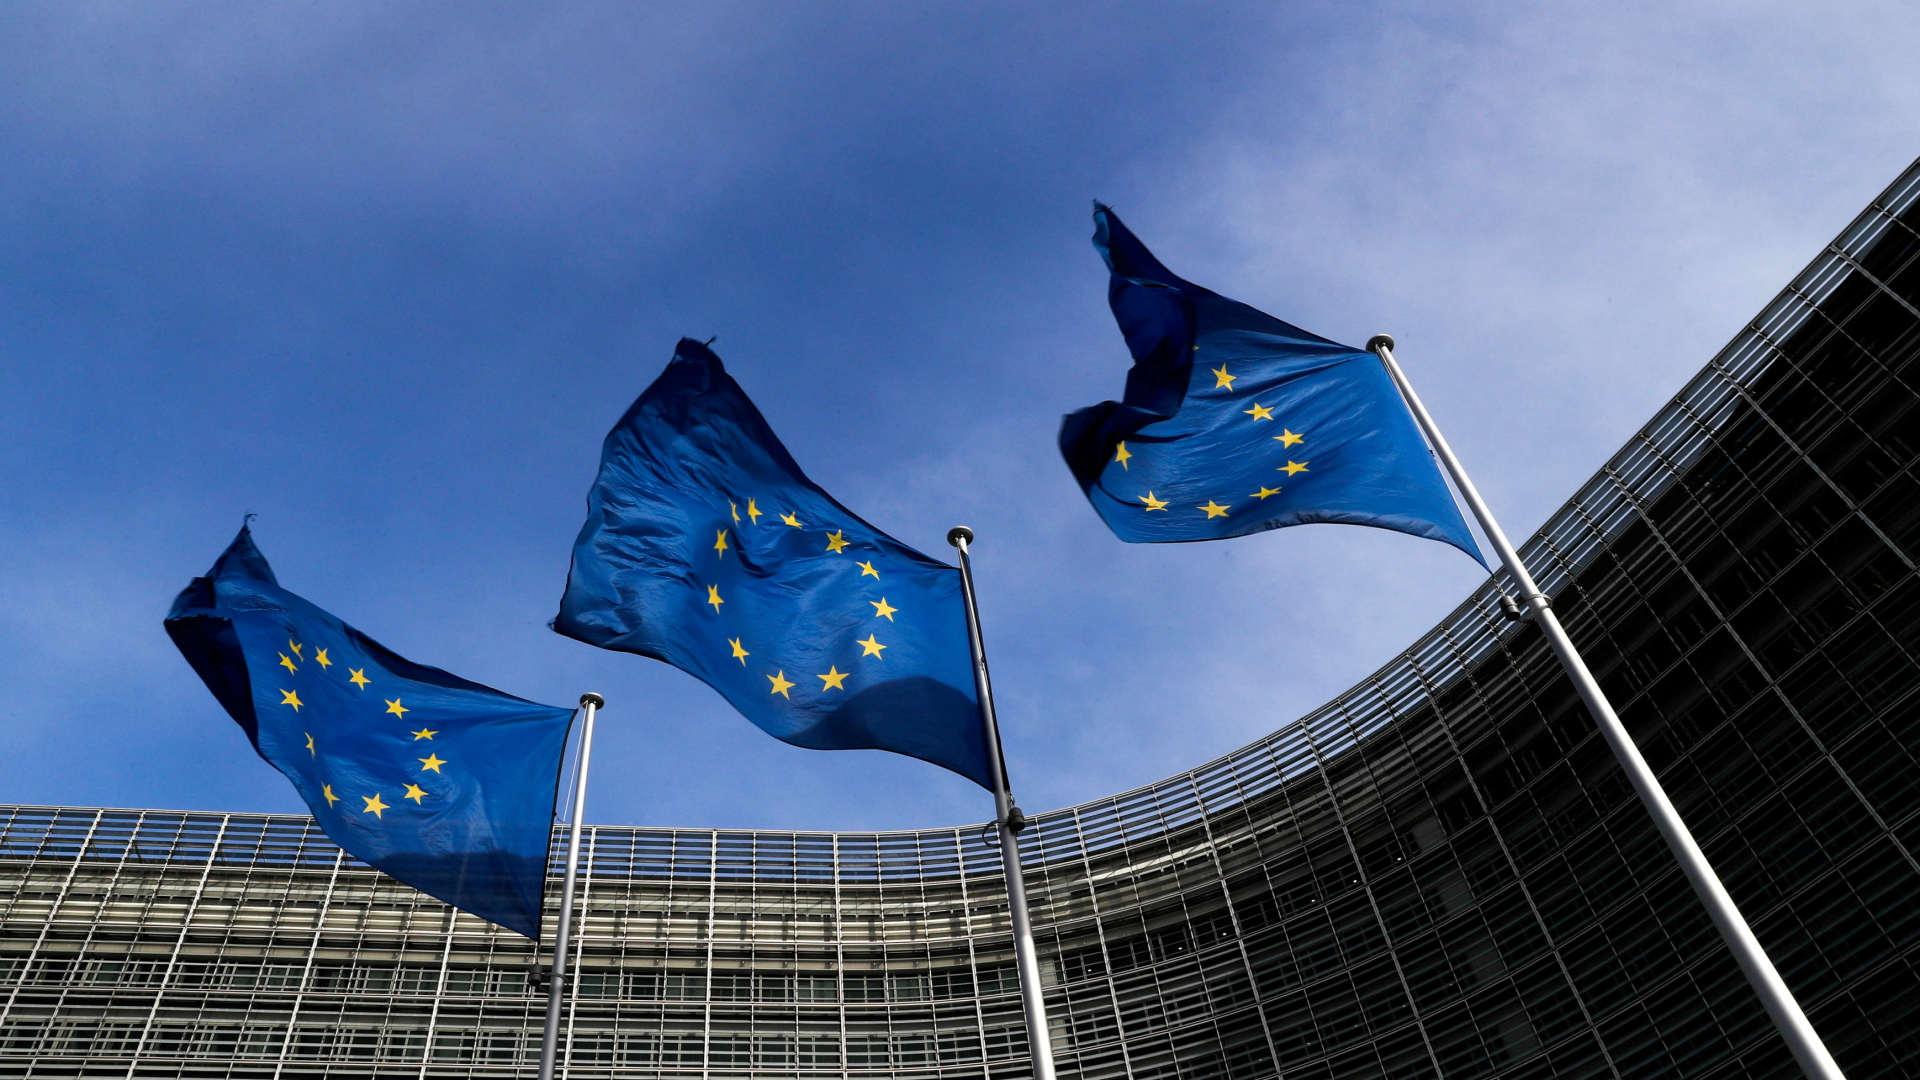 Flaggen der Europäischen Union stehen vor dem Sitz der EU-Kommission in Brüssel. | REUTERS